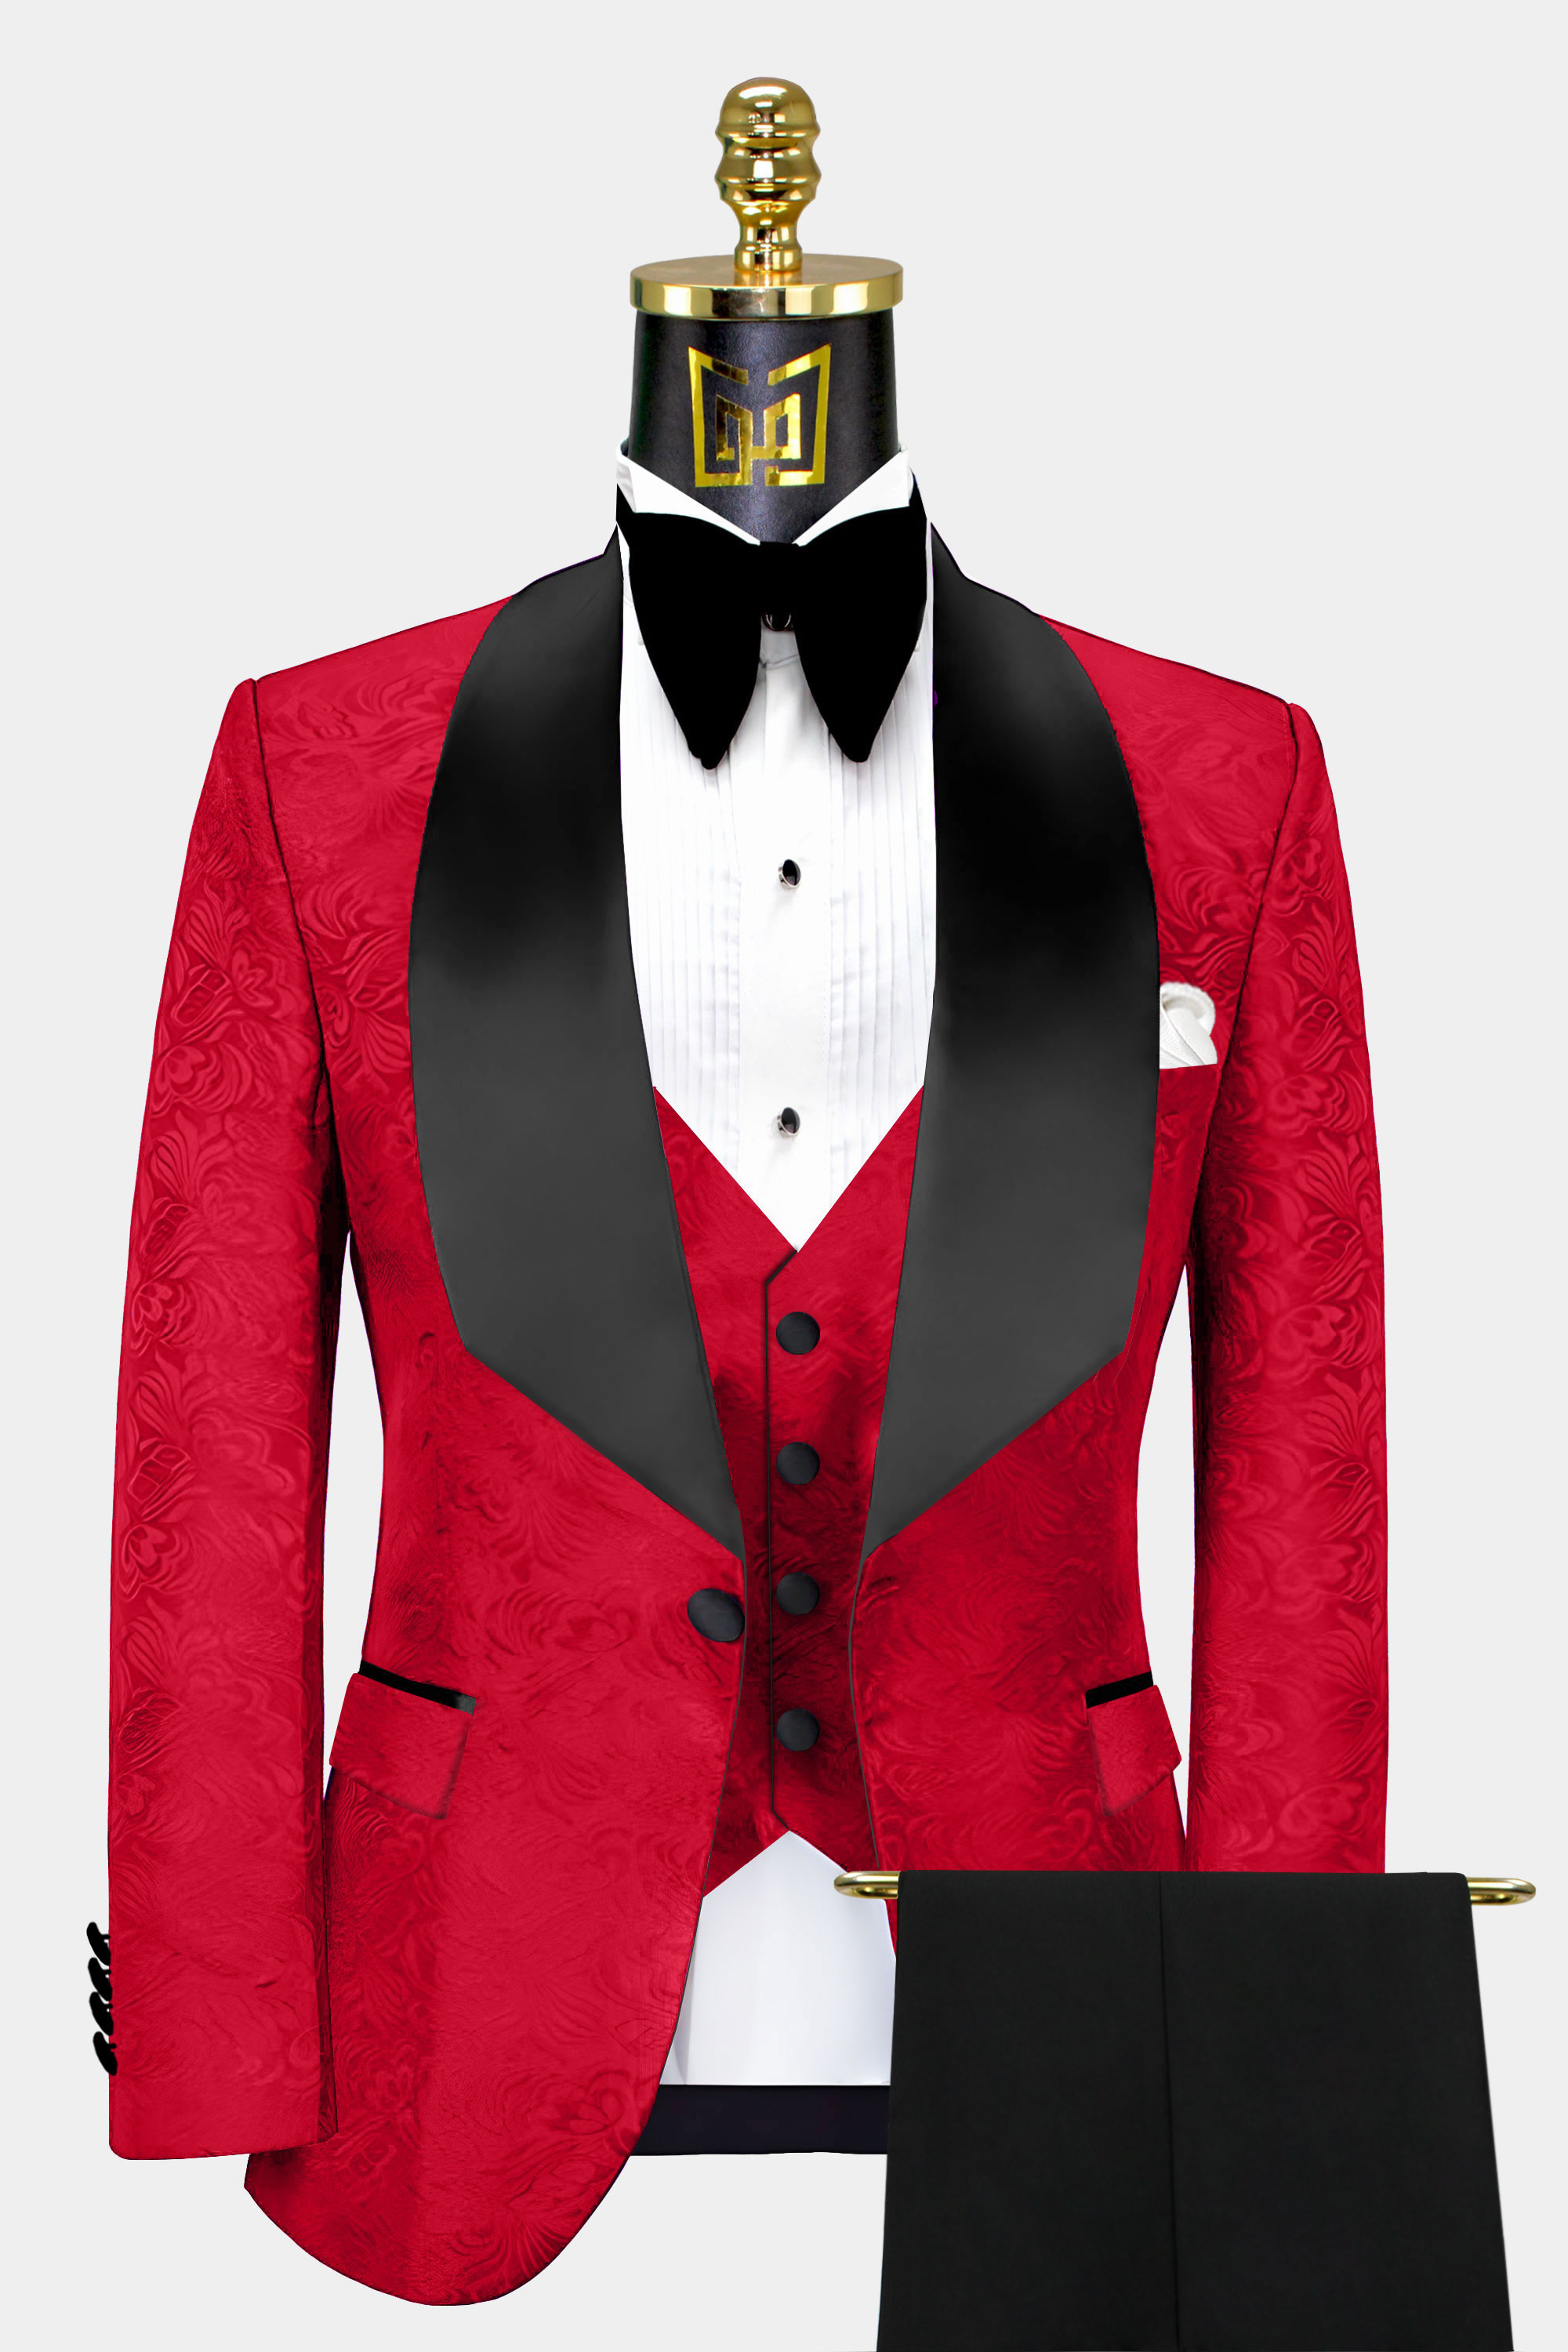 Black and Red Tuxedo Suit | Gentleman's Guru